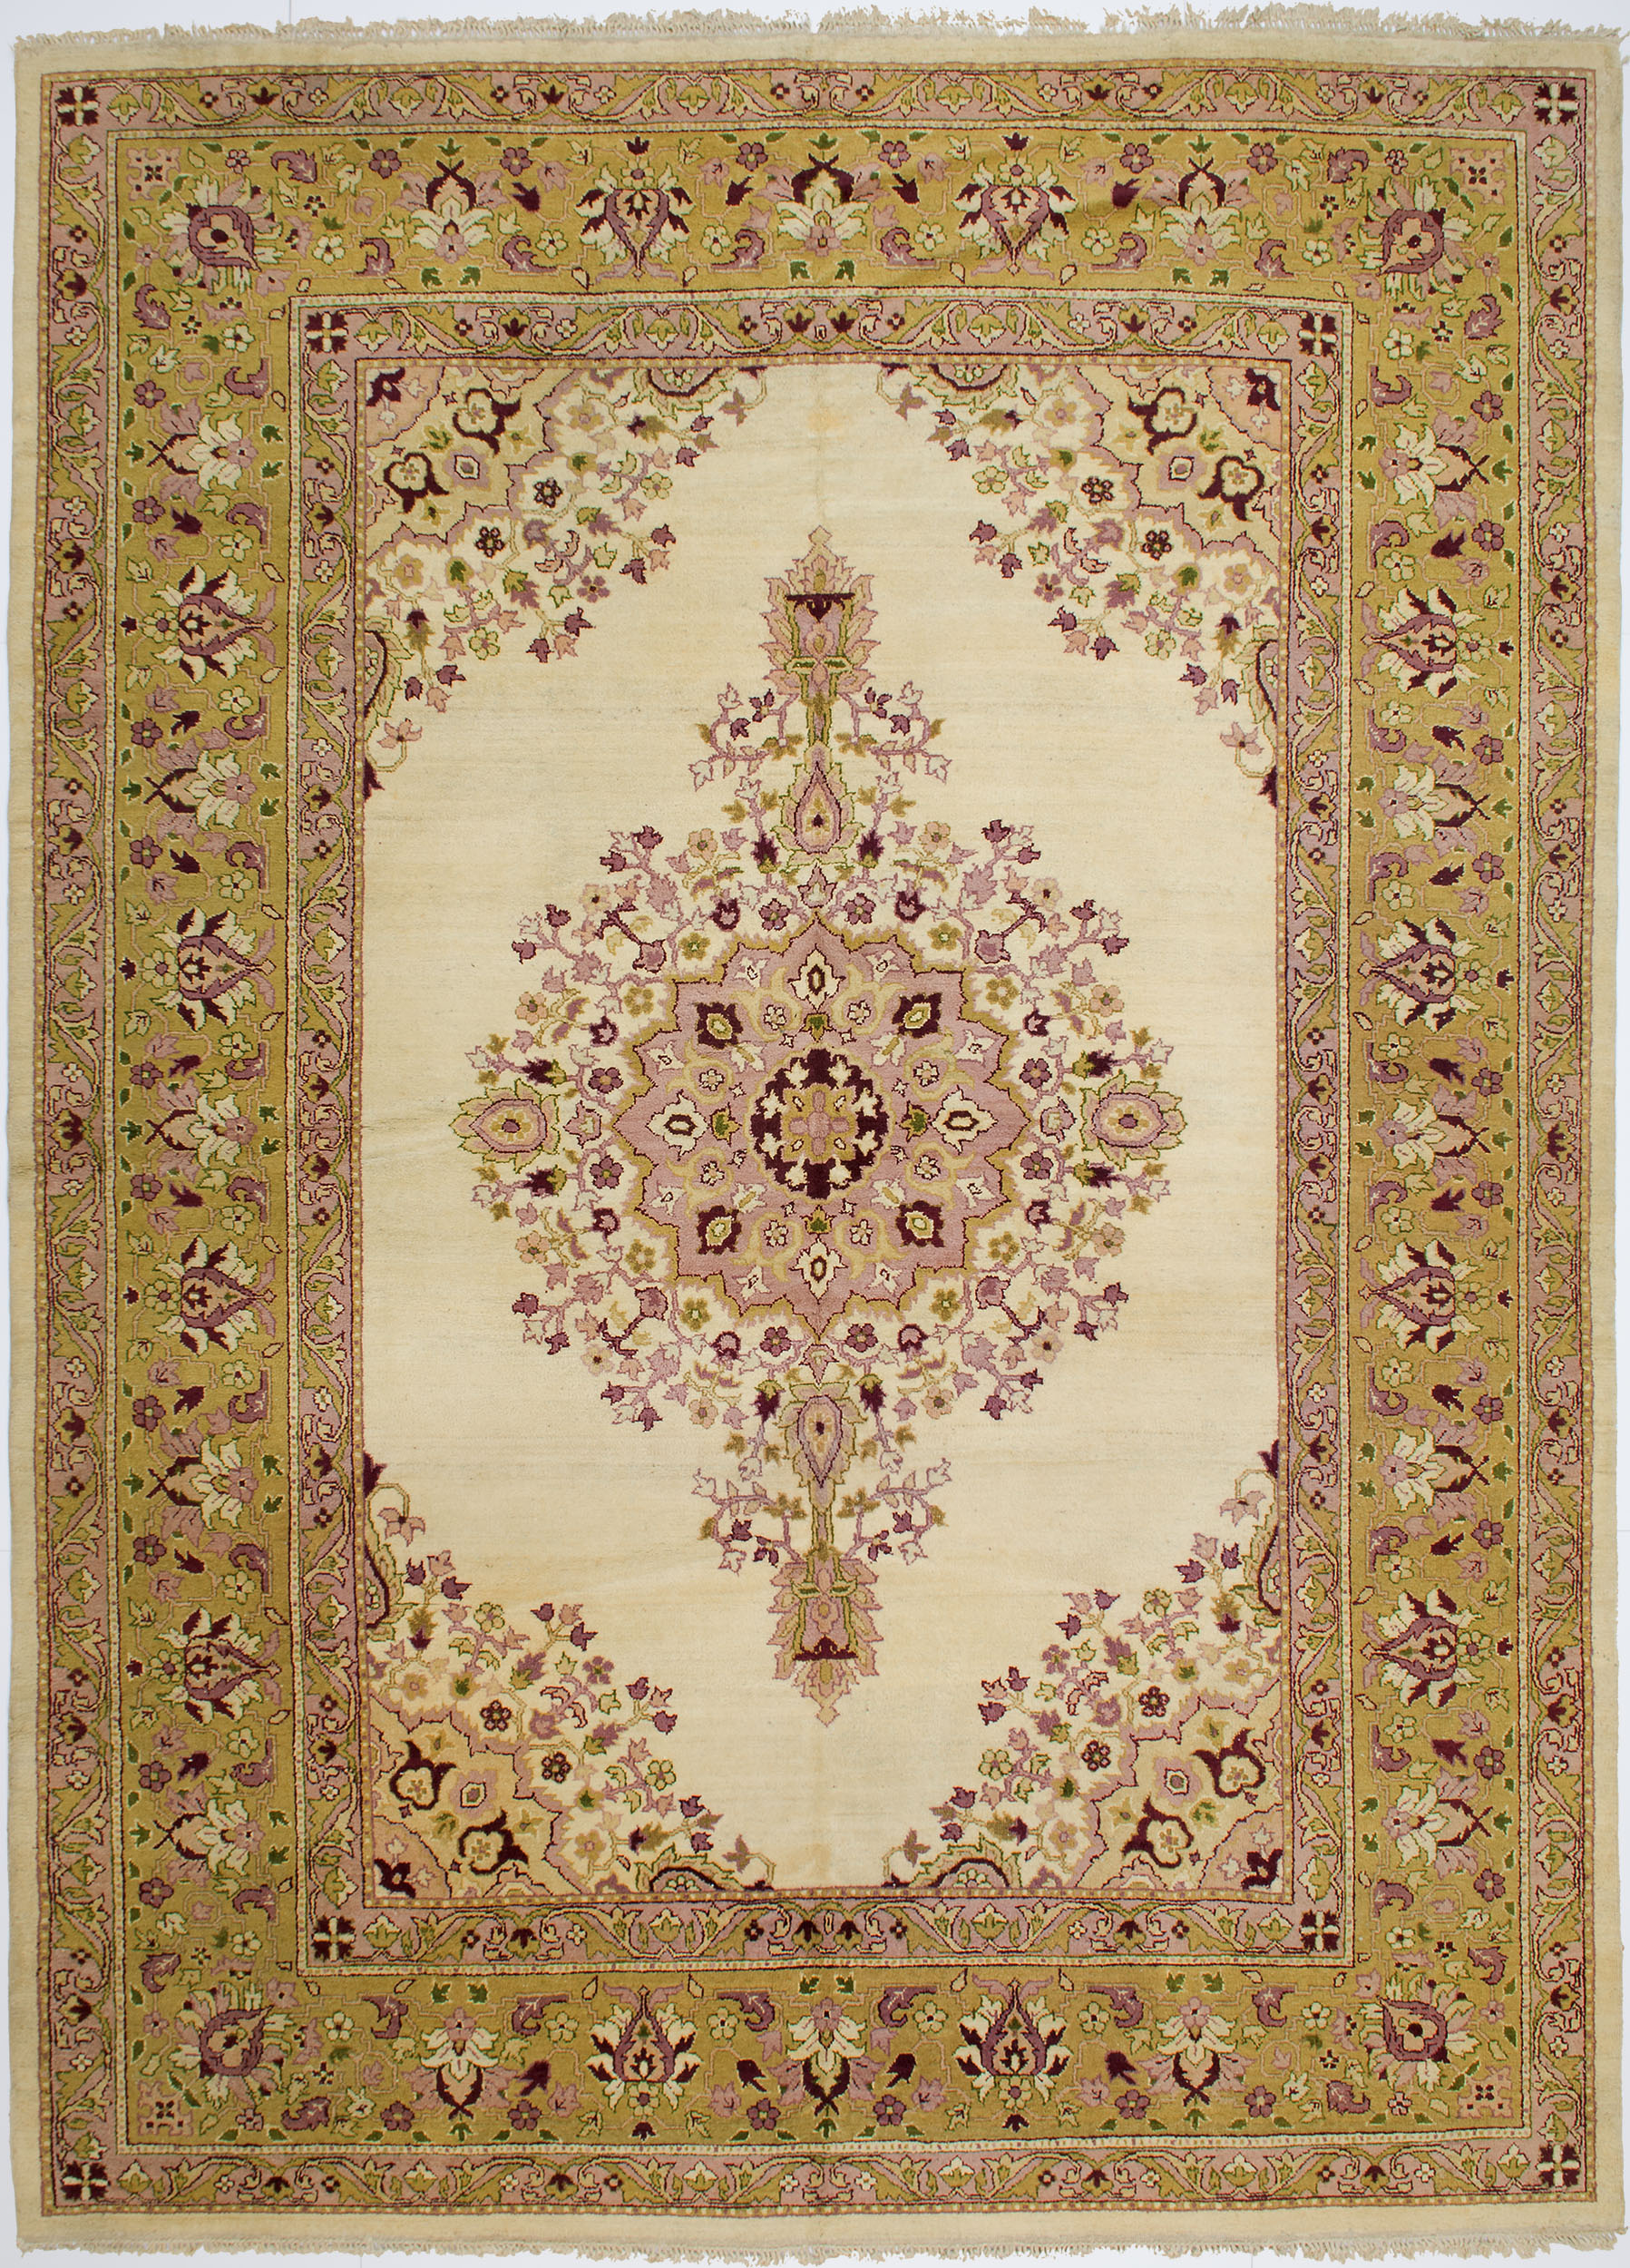 Amritsar Carpet 12' 3" x 9' 0" 